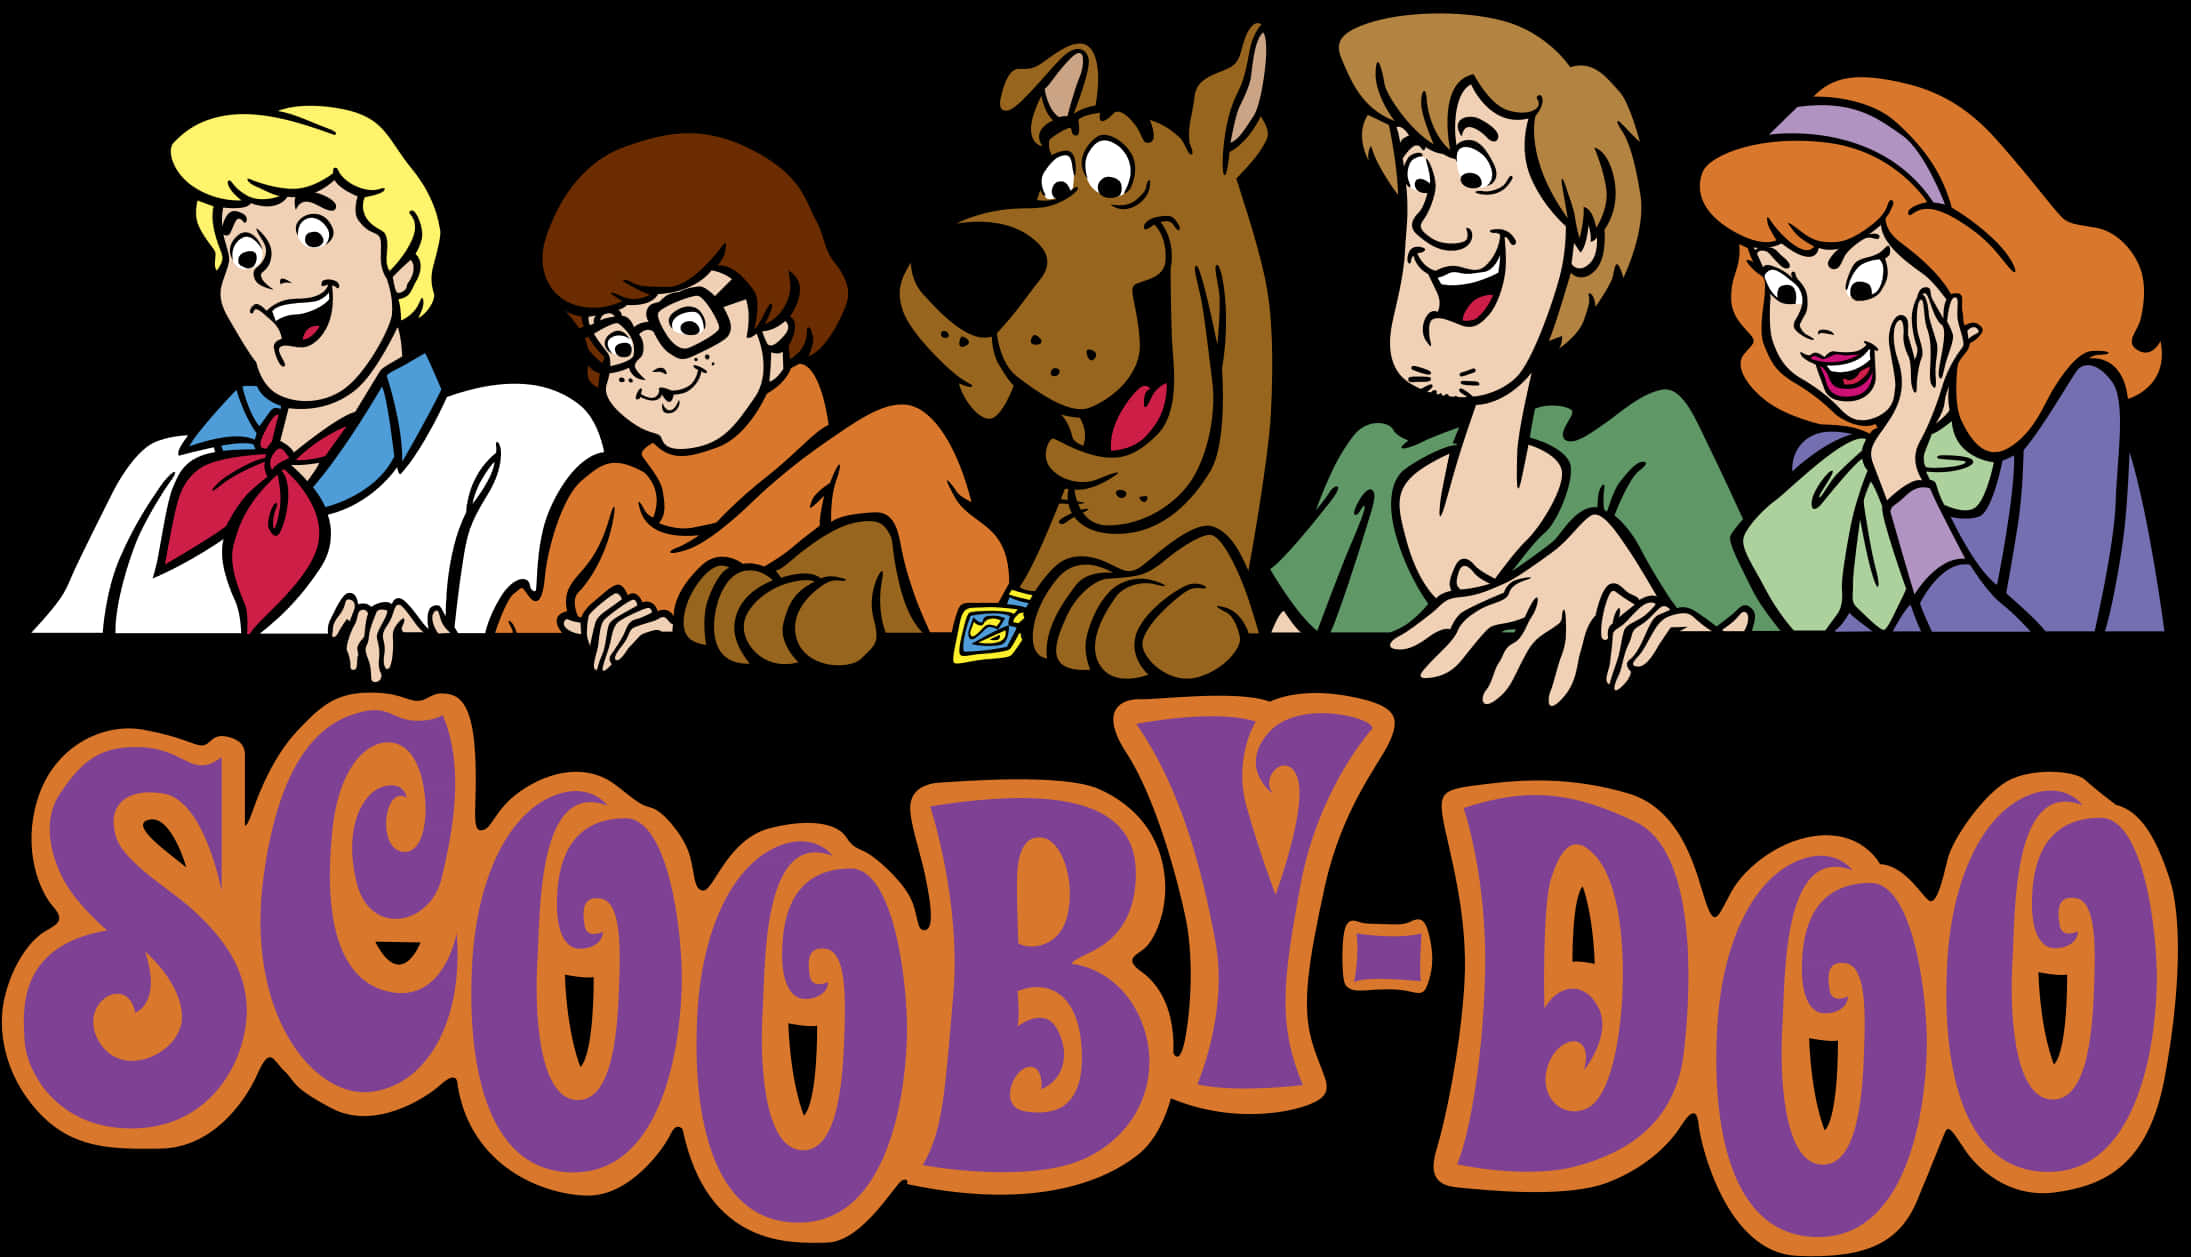 Scooby Doo Classic Cartoon Cast PNG